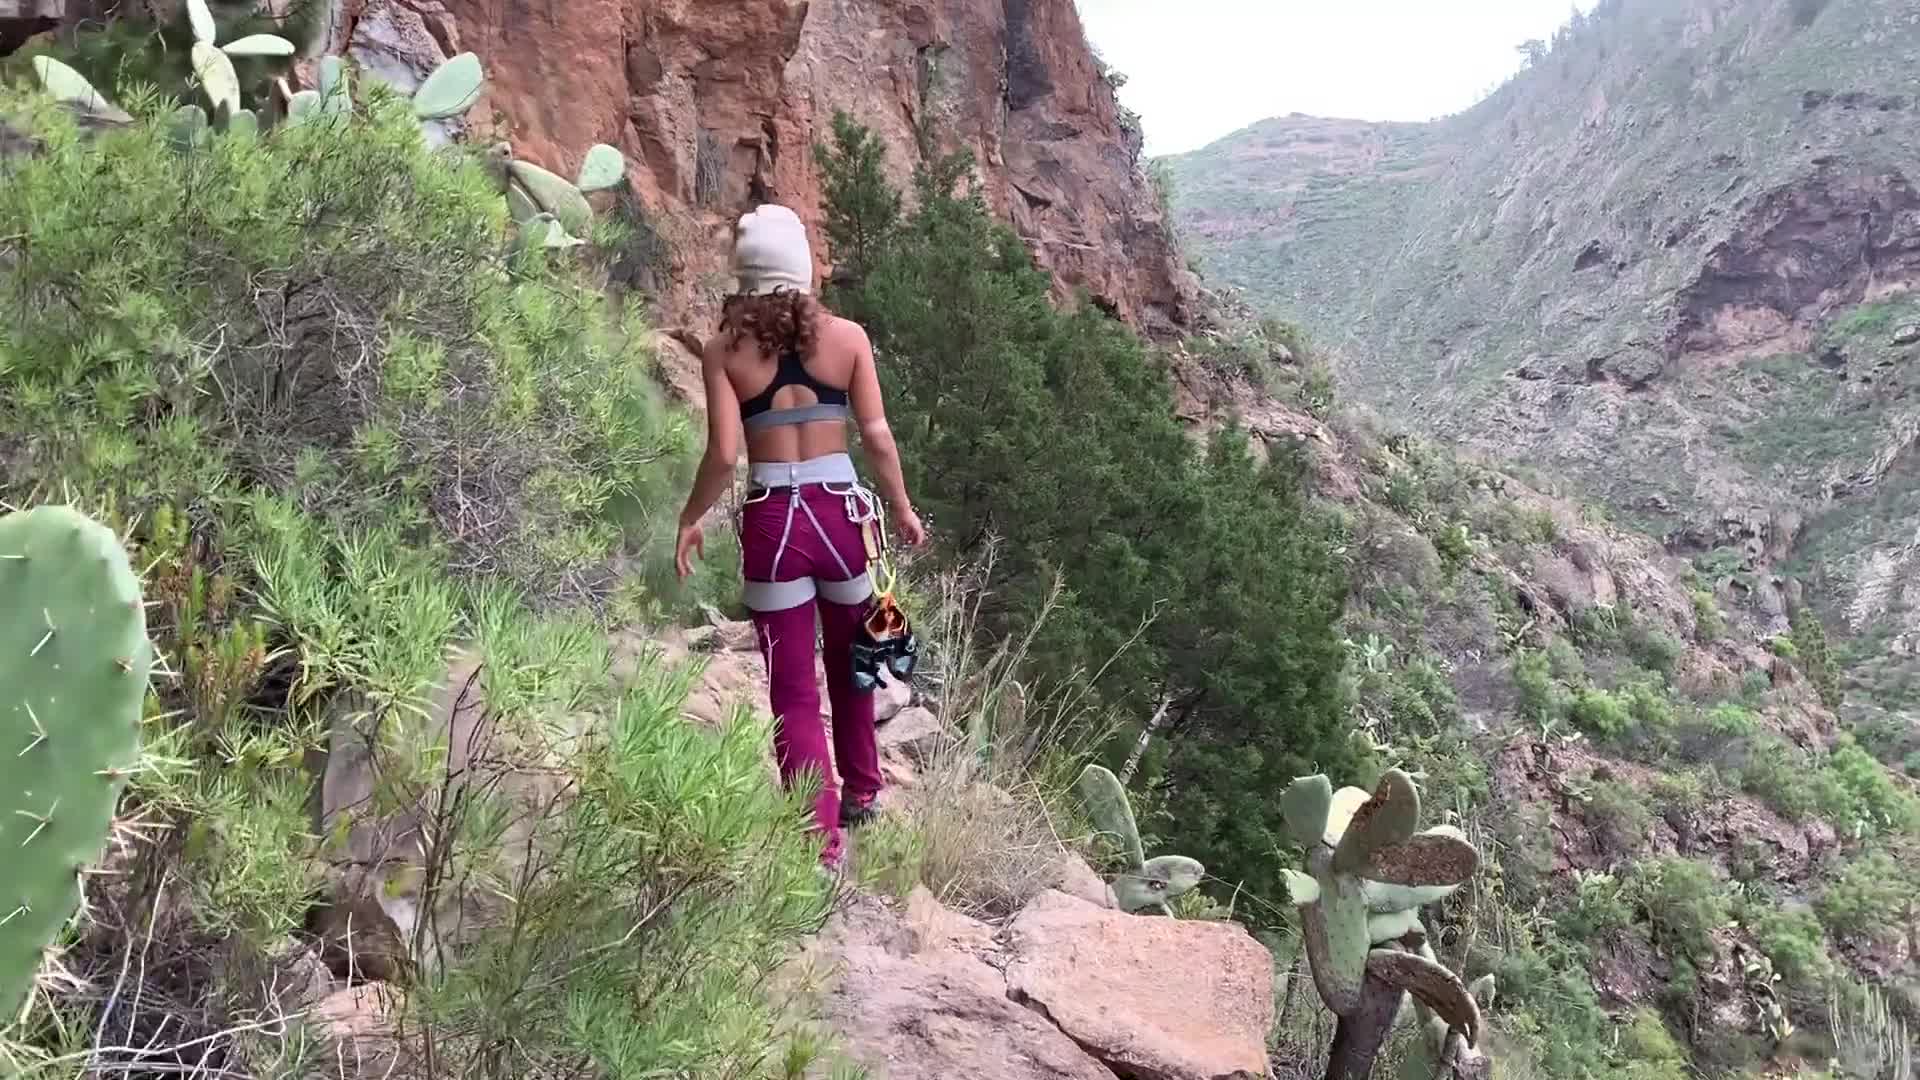 Crazy par klatre knulle hverandre på toppen av et fjell - Videos bilde bilde